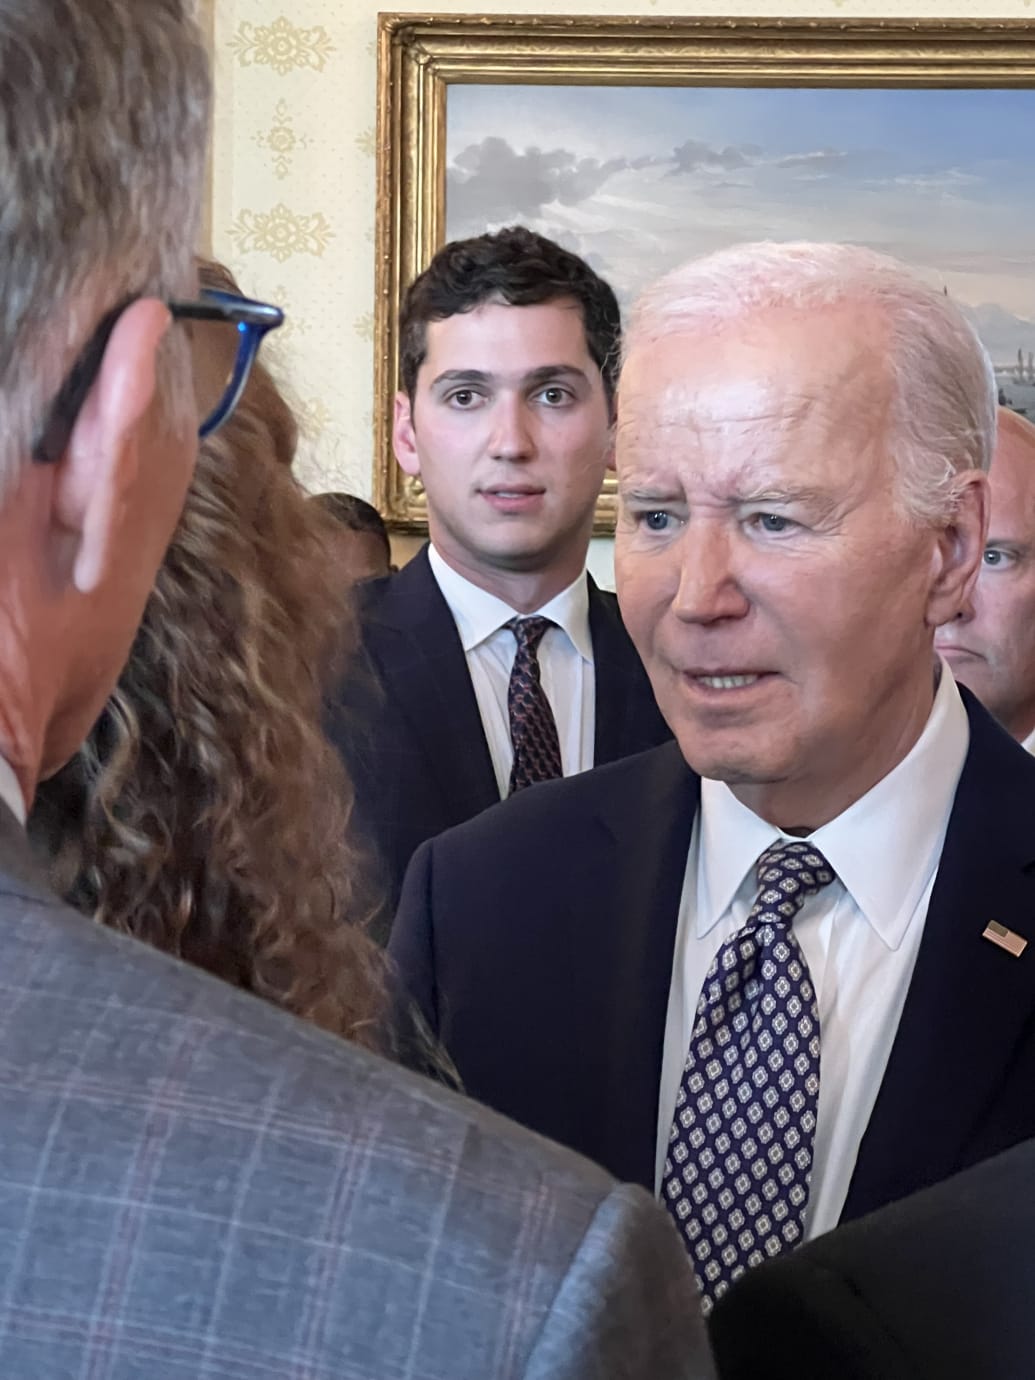 Joe Biden with the impressionist Matt Friend behind him